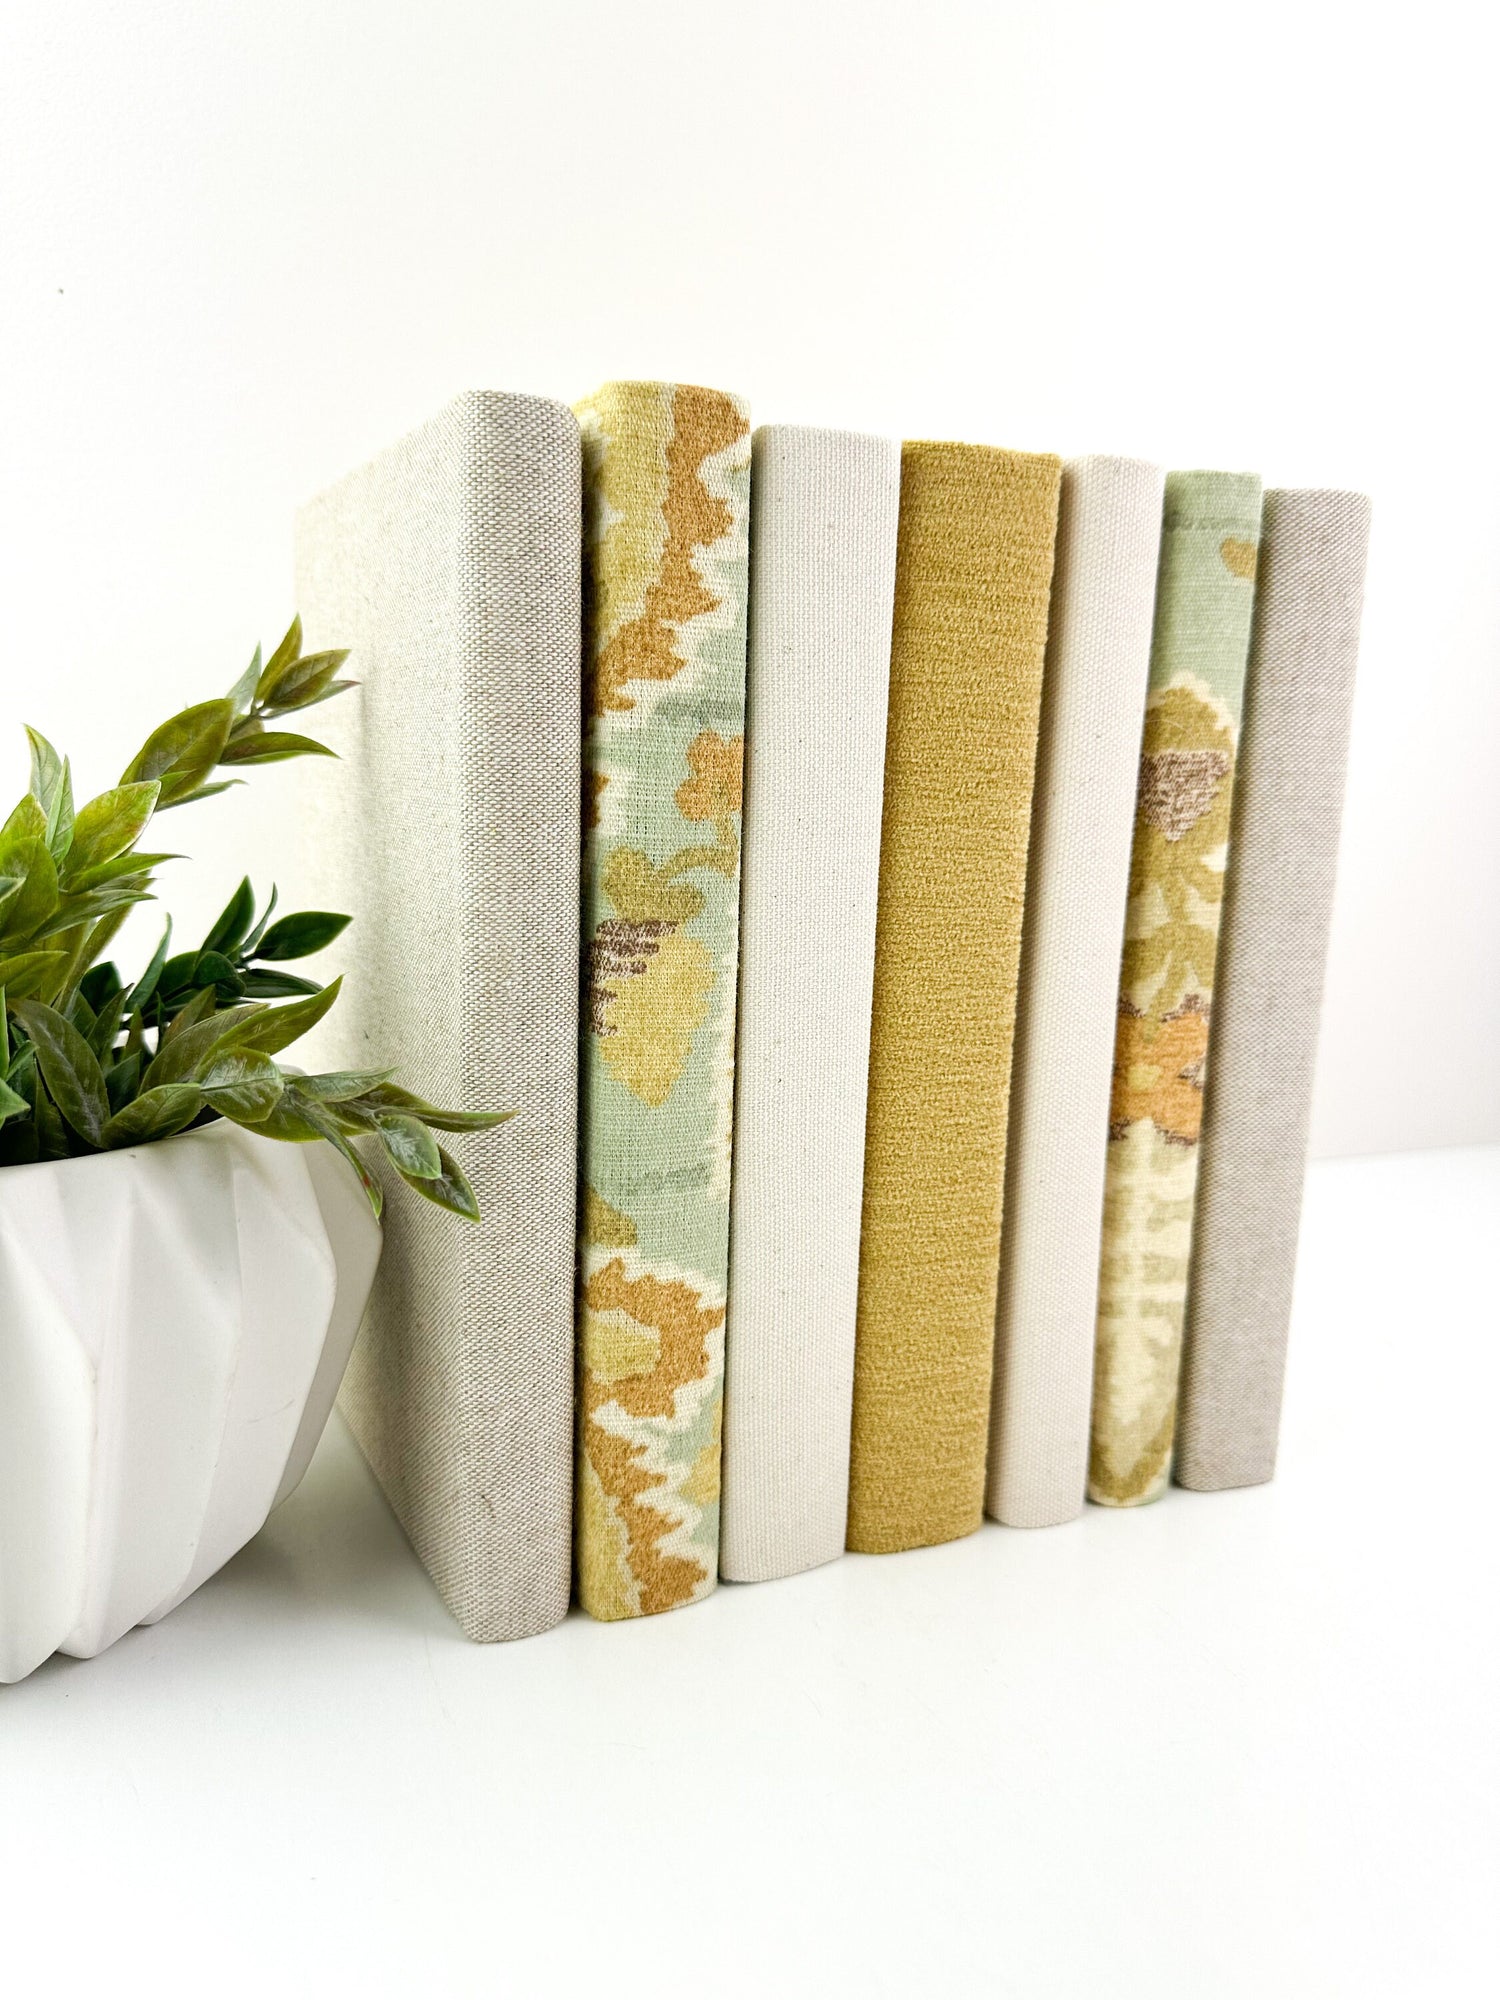 Linen Covered Books